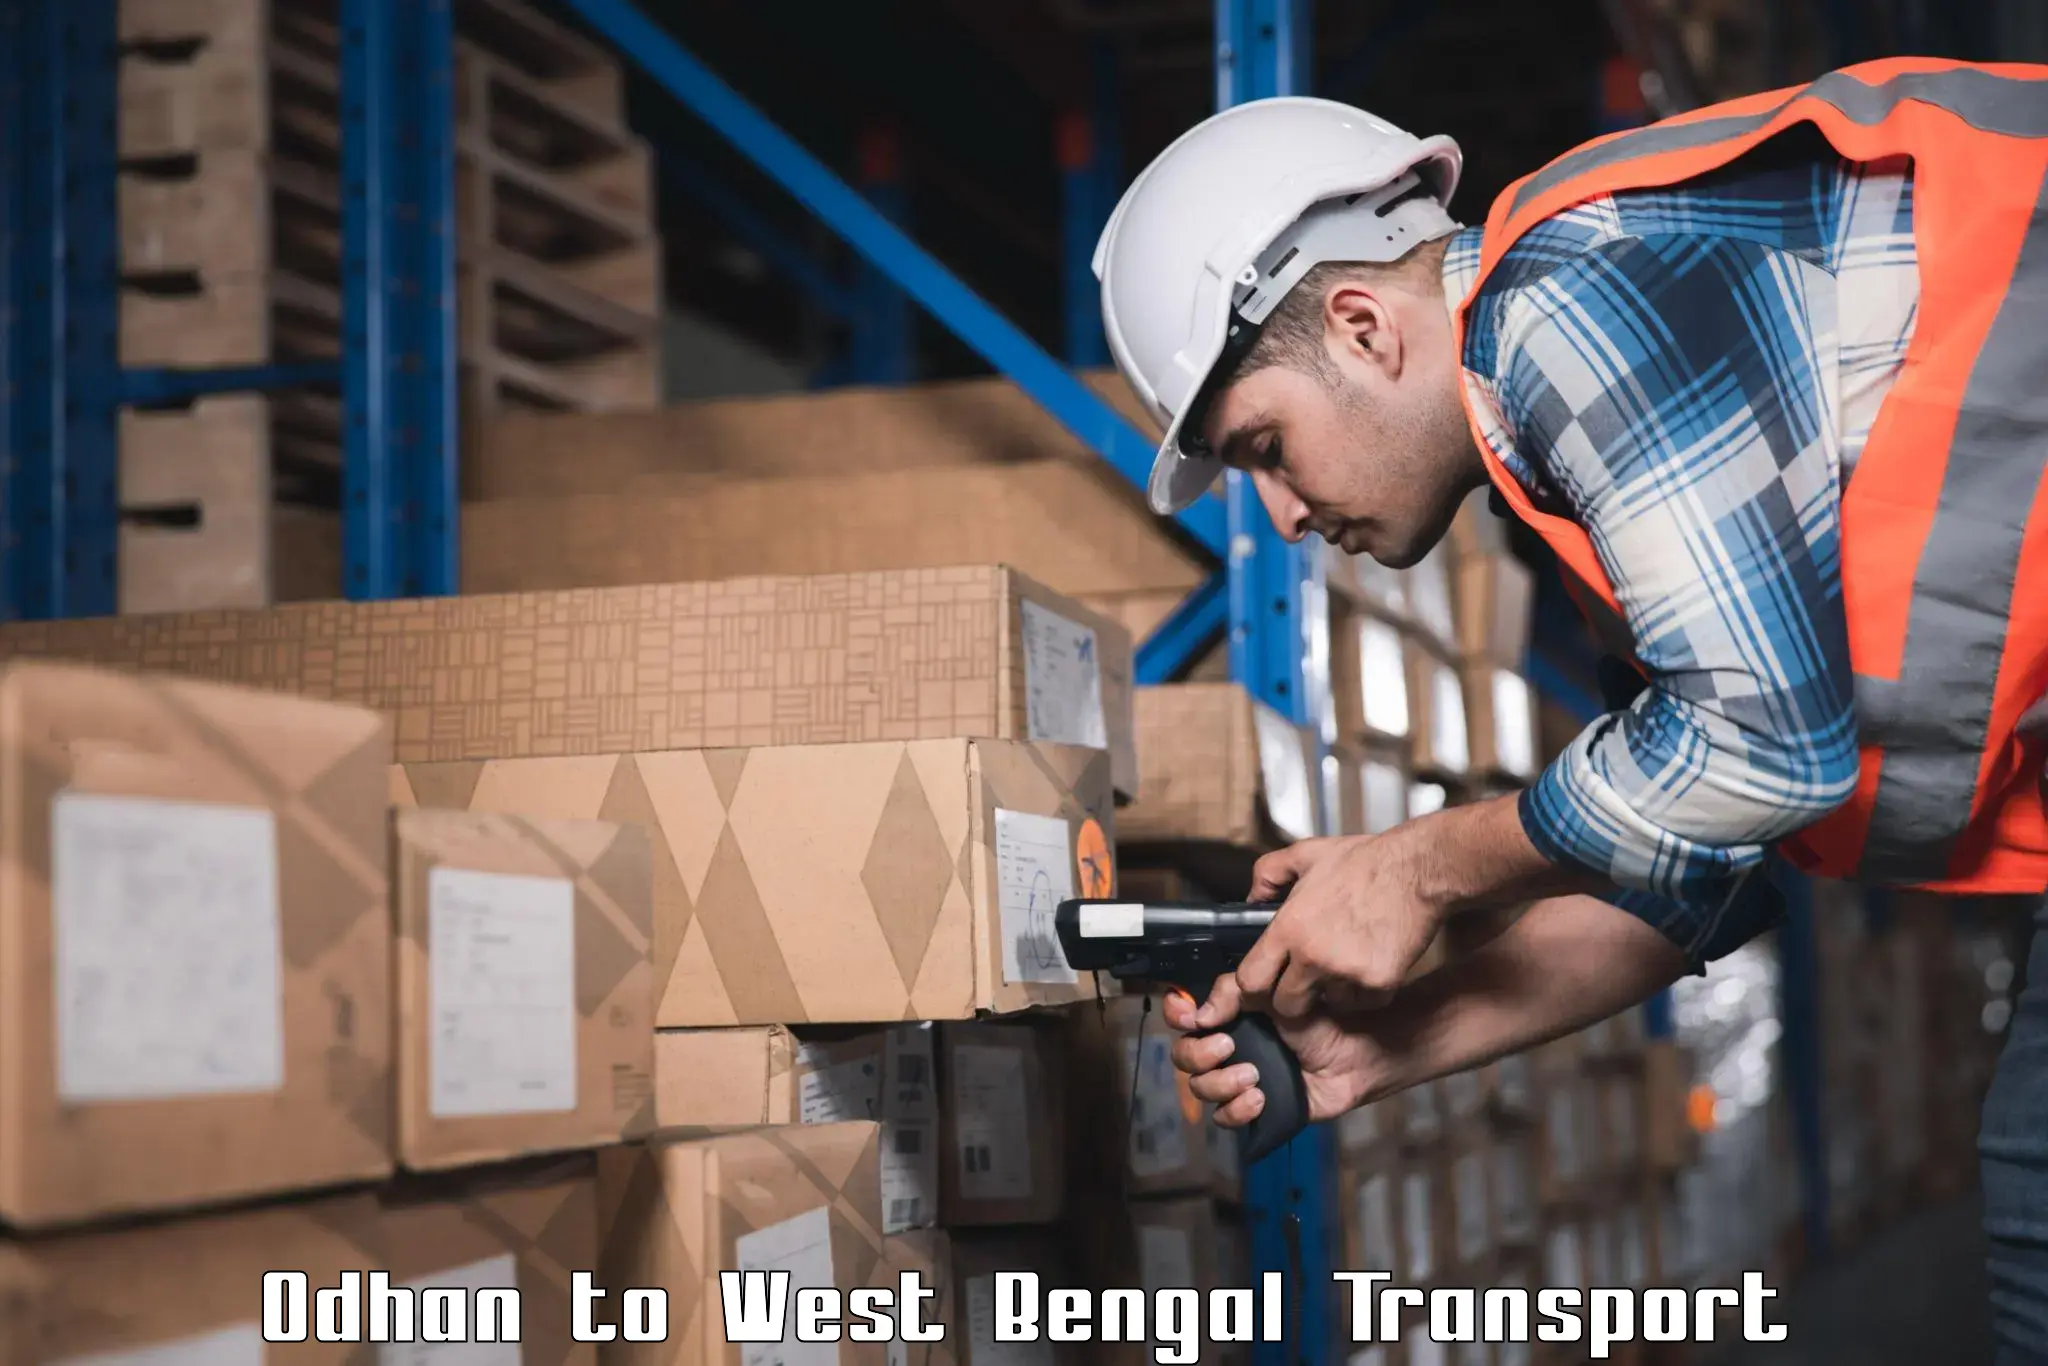 Shipping partner Odhan to Panskura